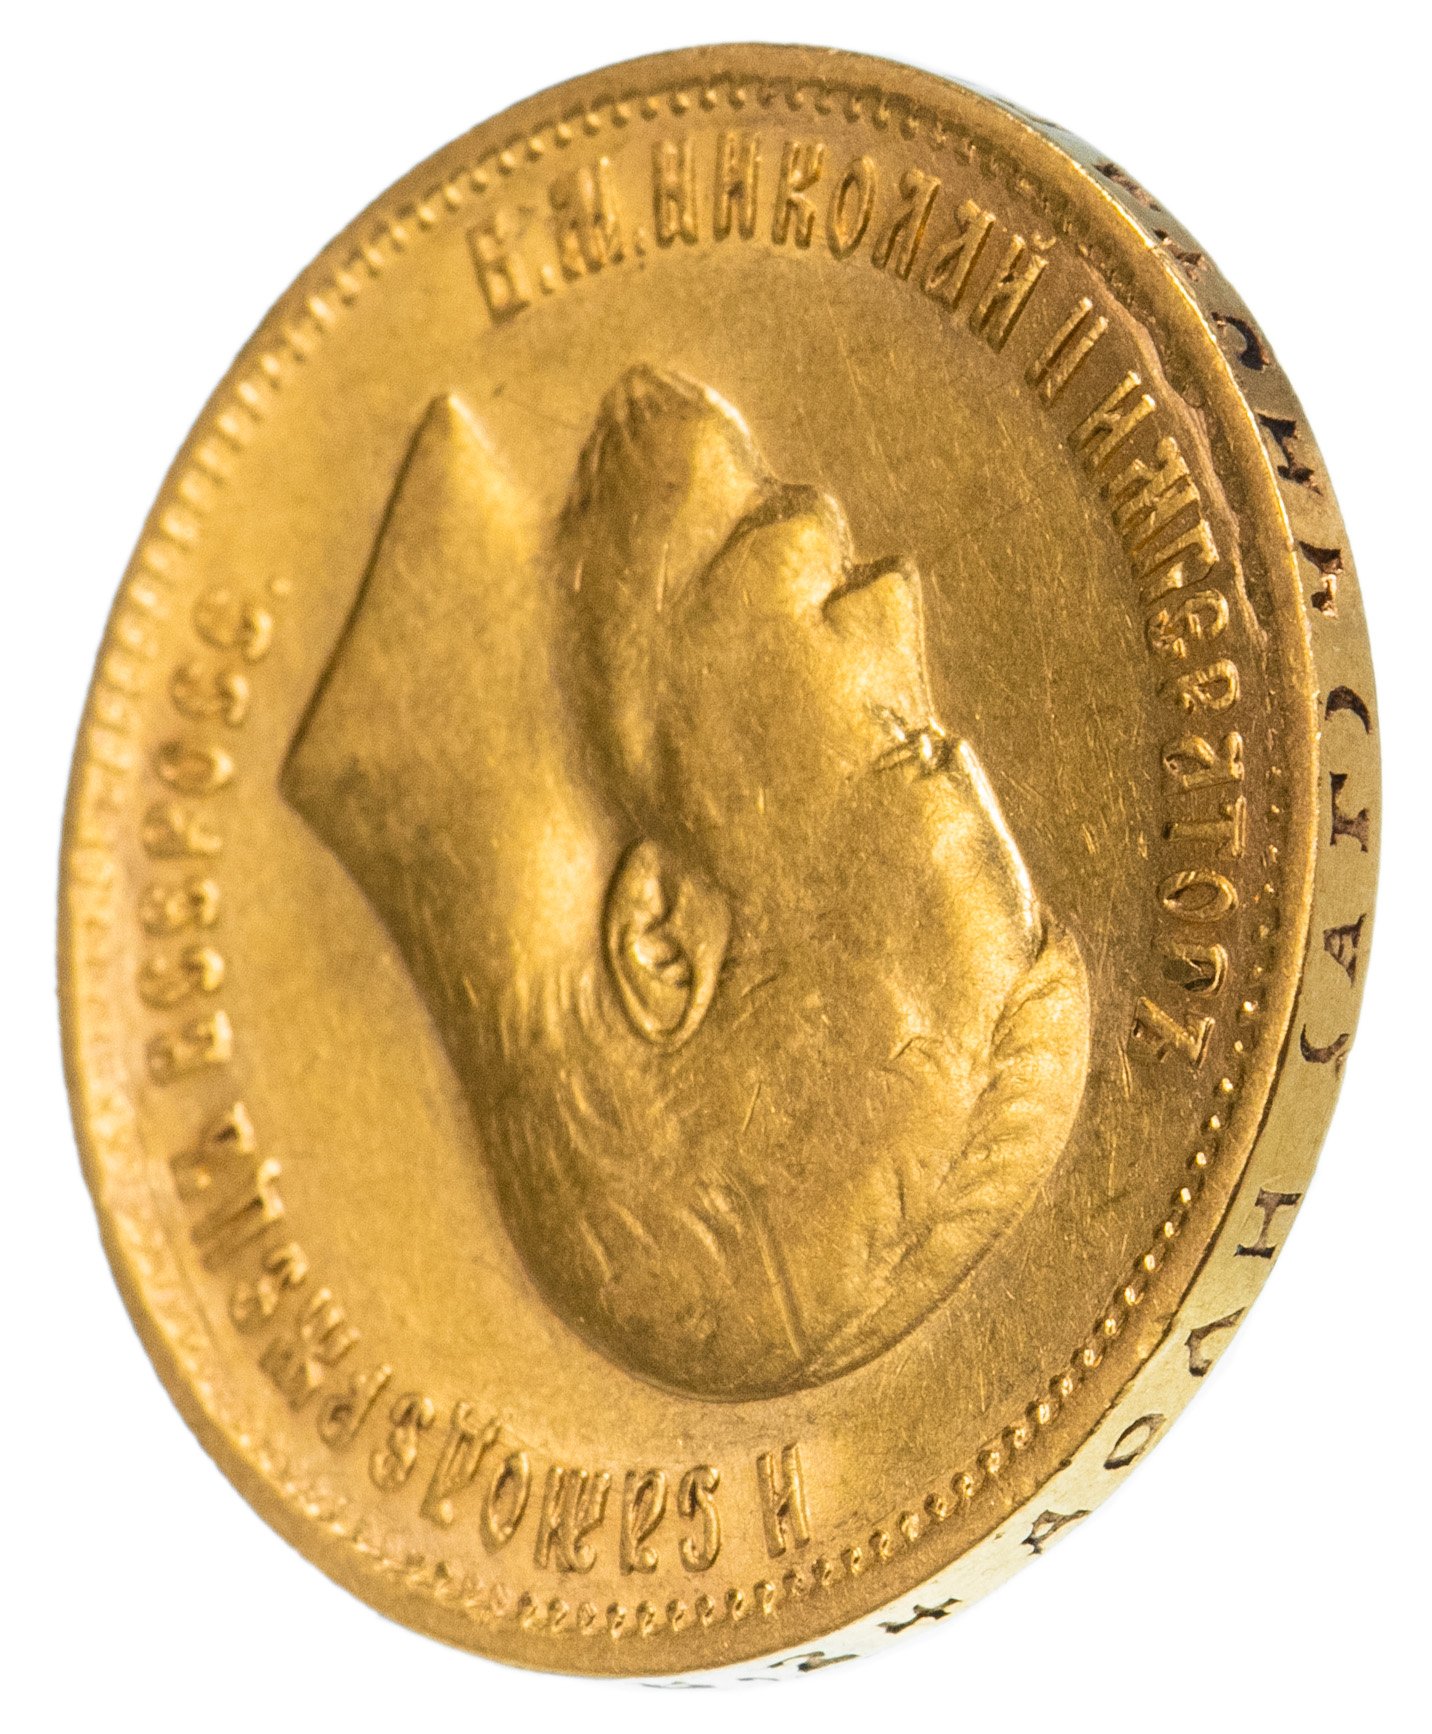 10 рублей 1899 золотая. 10 Рублей 1899 АГ. Гурт монеты 10 рублей 1899 АГ. 10 Рублей 1899 золото фото.